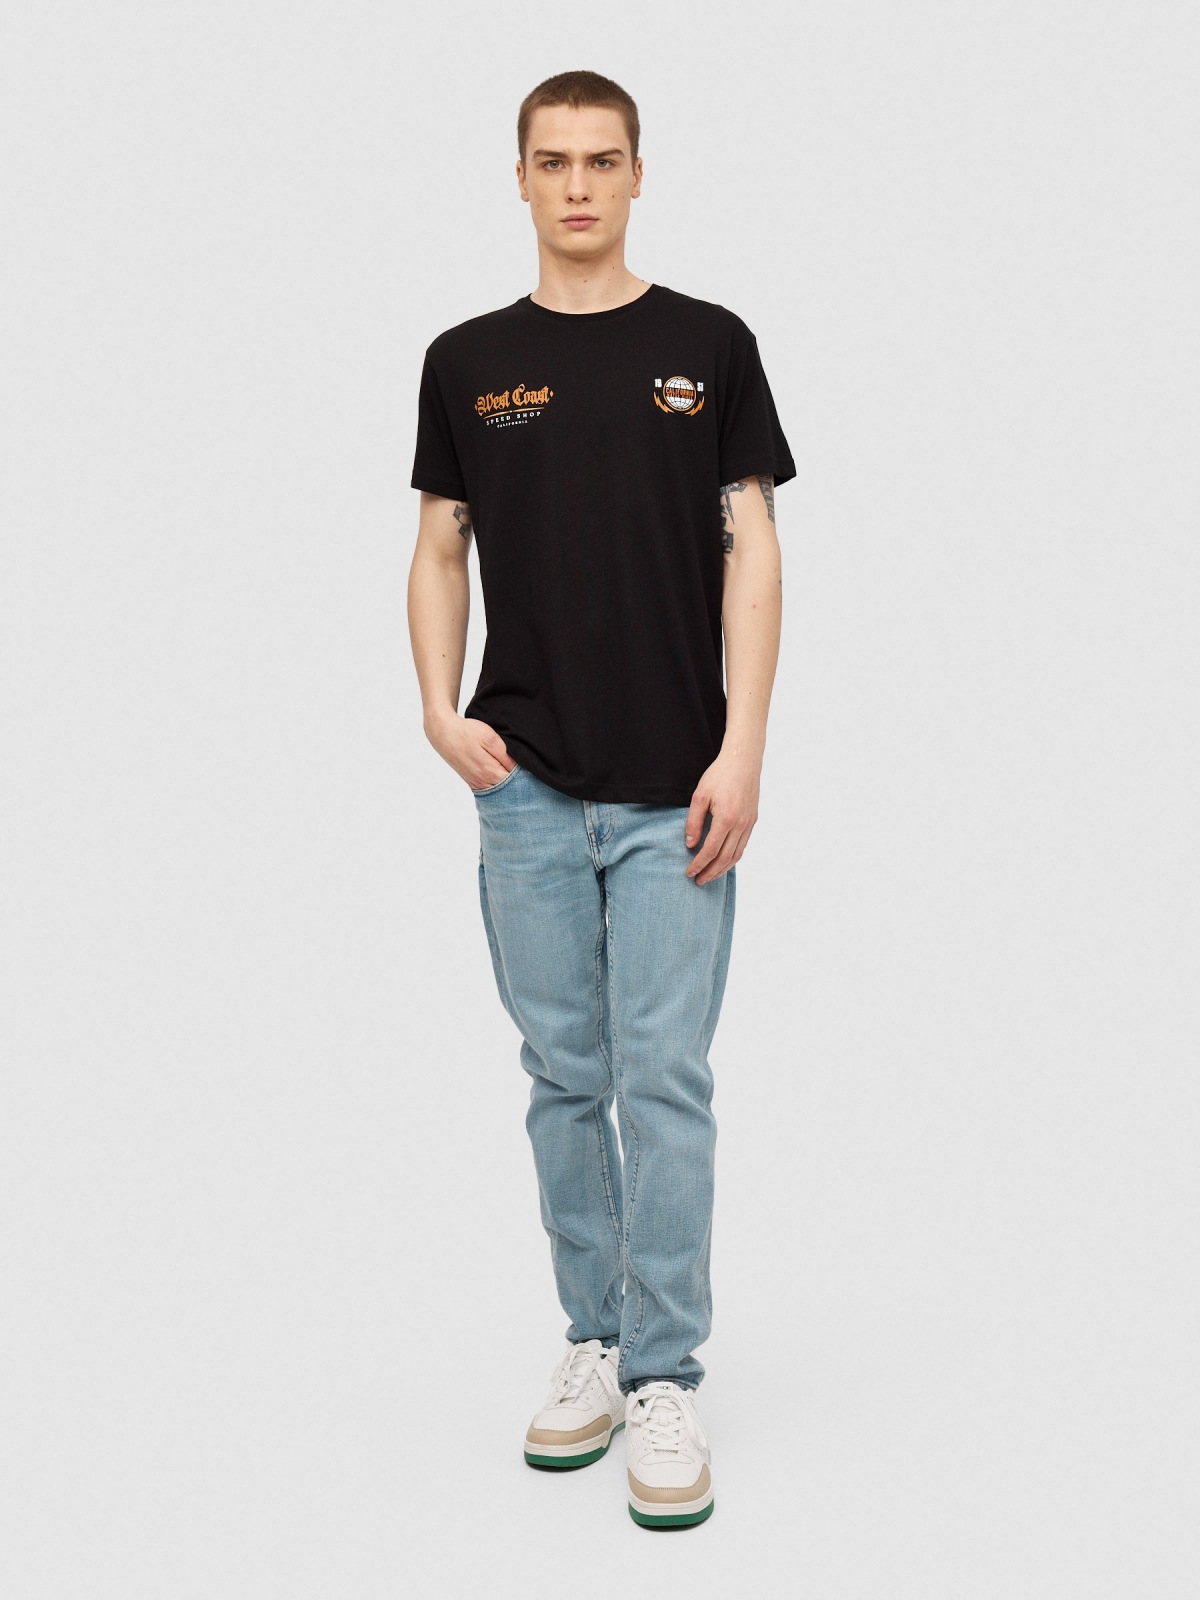 Camiseta Classic Racer negro vista general frontal